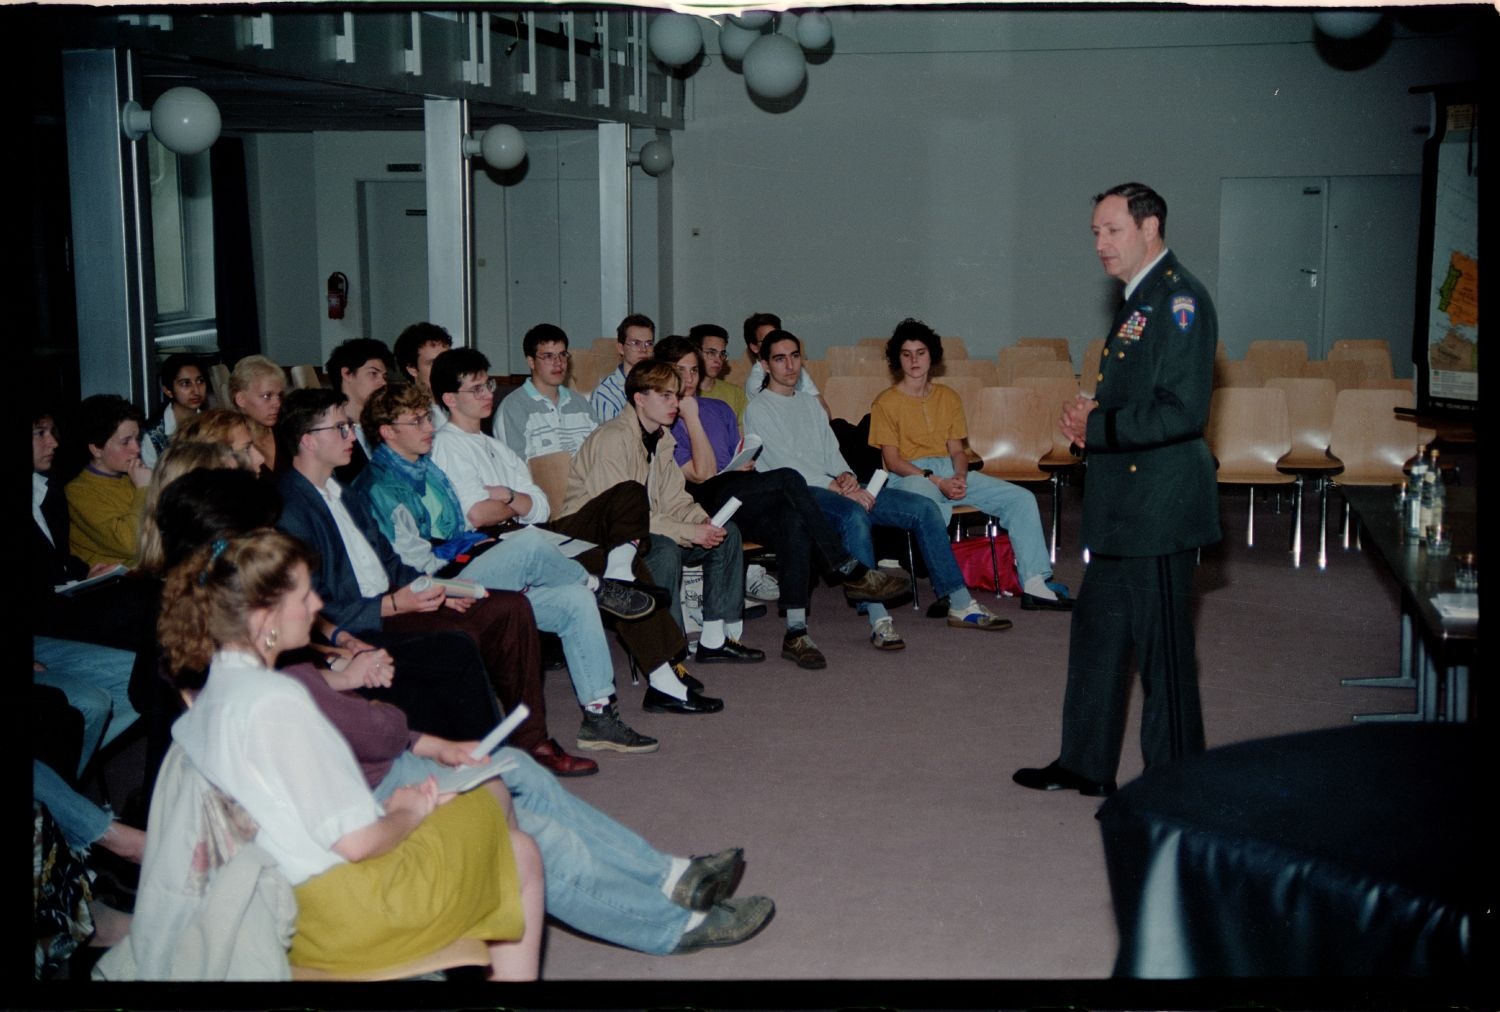 Fotografie: Besuch von US-Stadtkommandant Major General Raymond E. Haddock in einem Gymnasium in West-Berlin